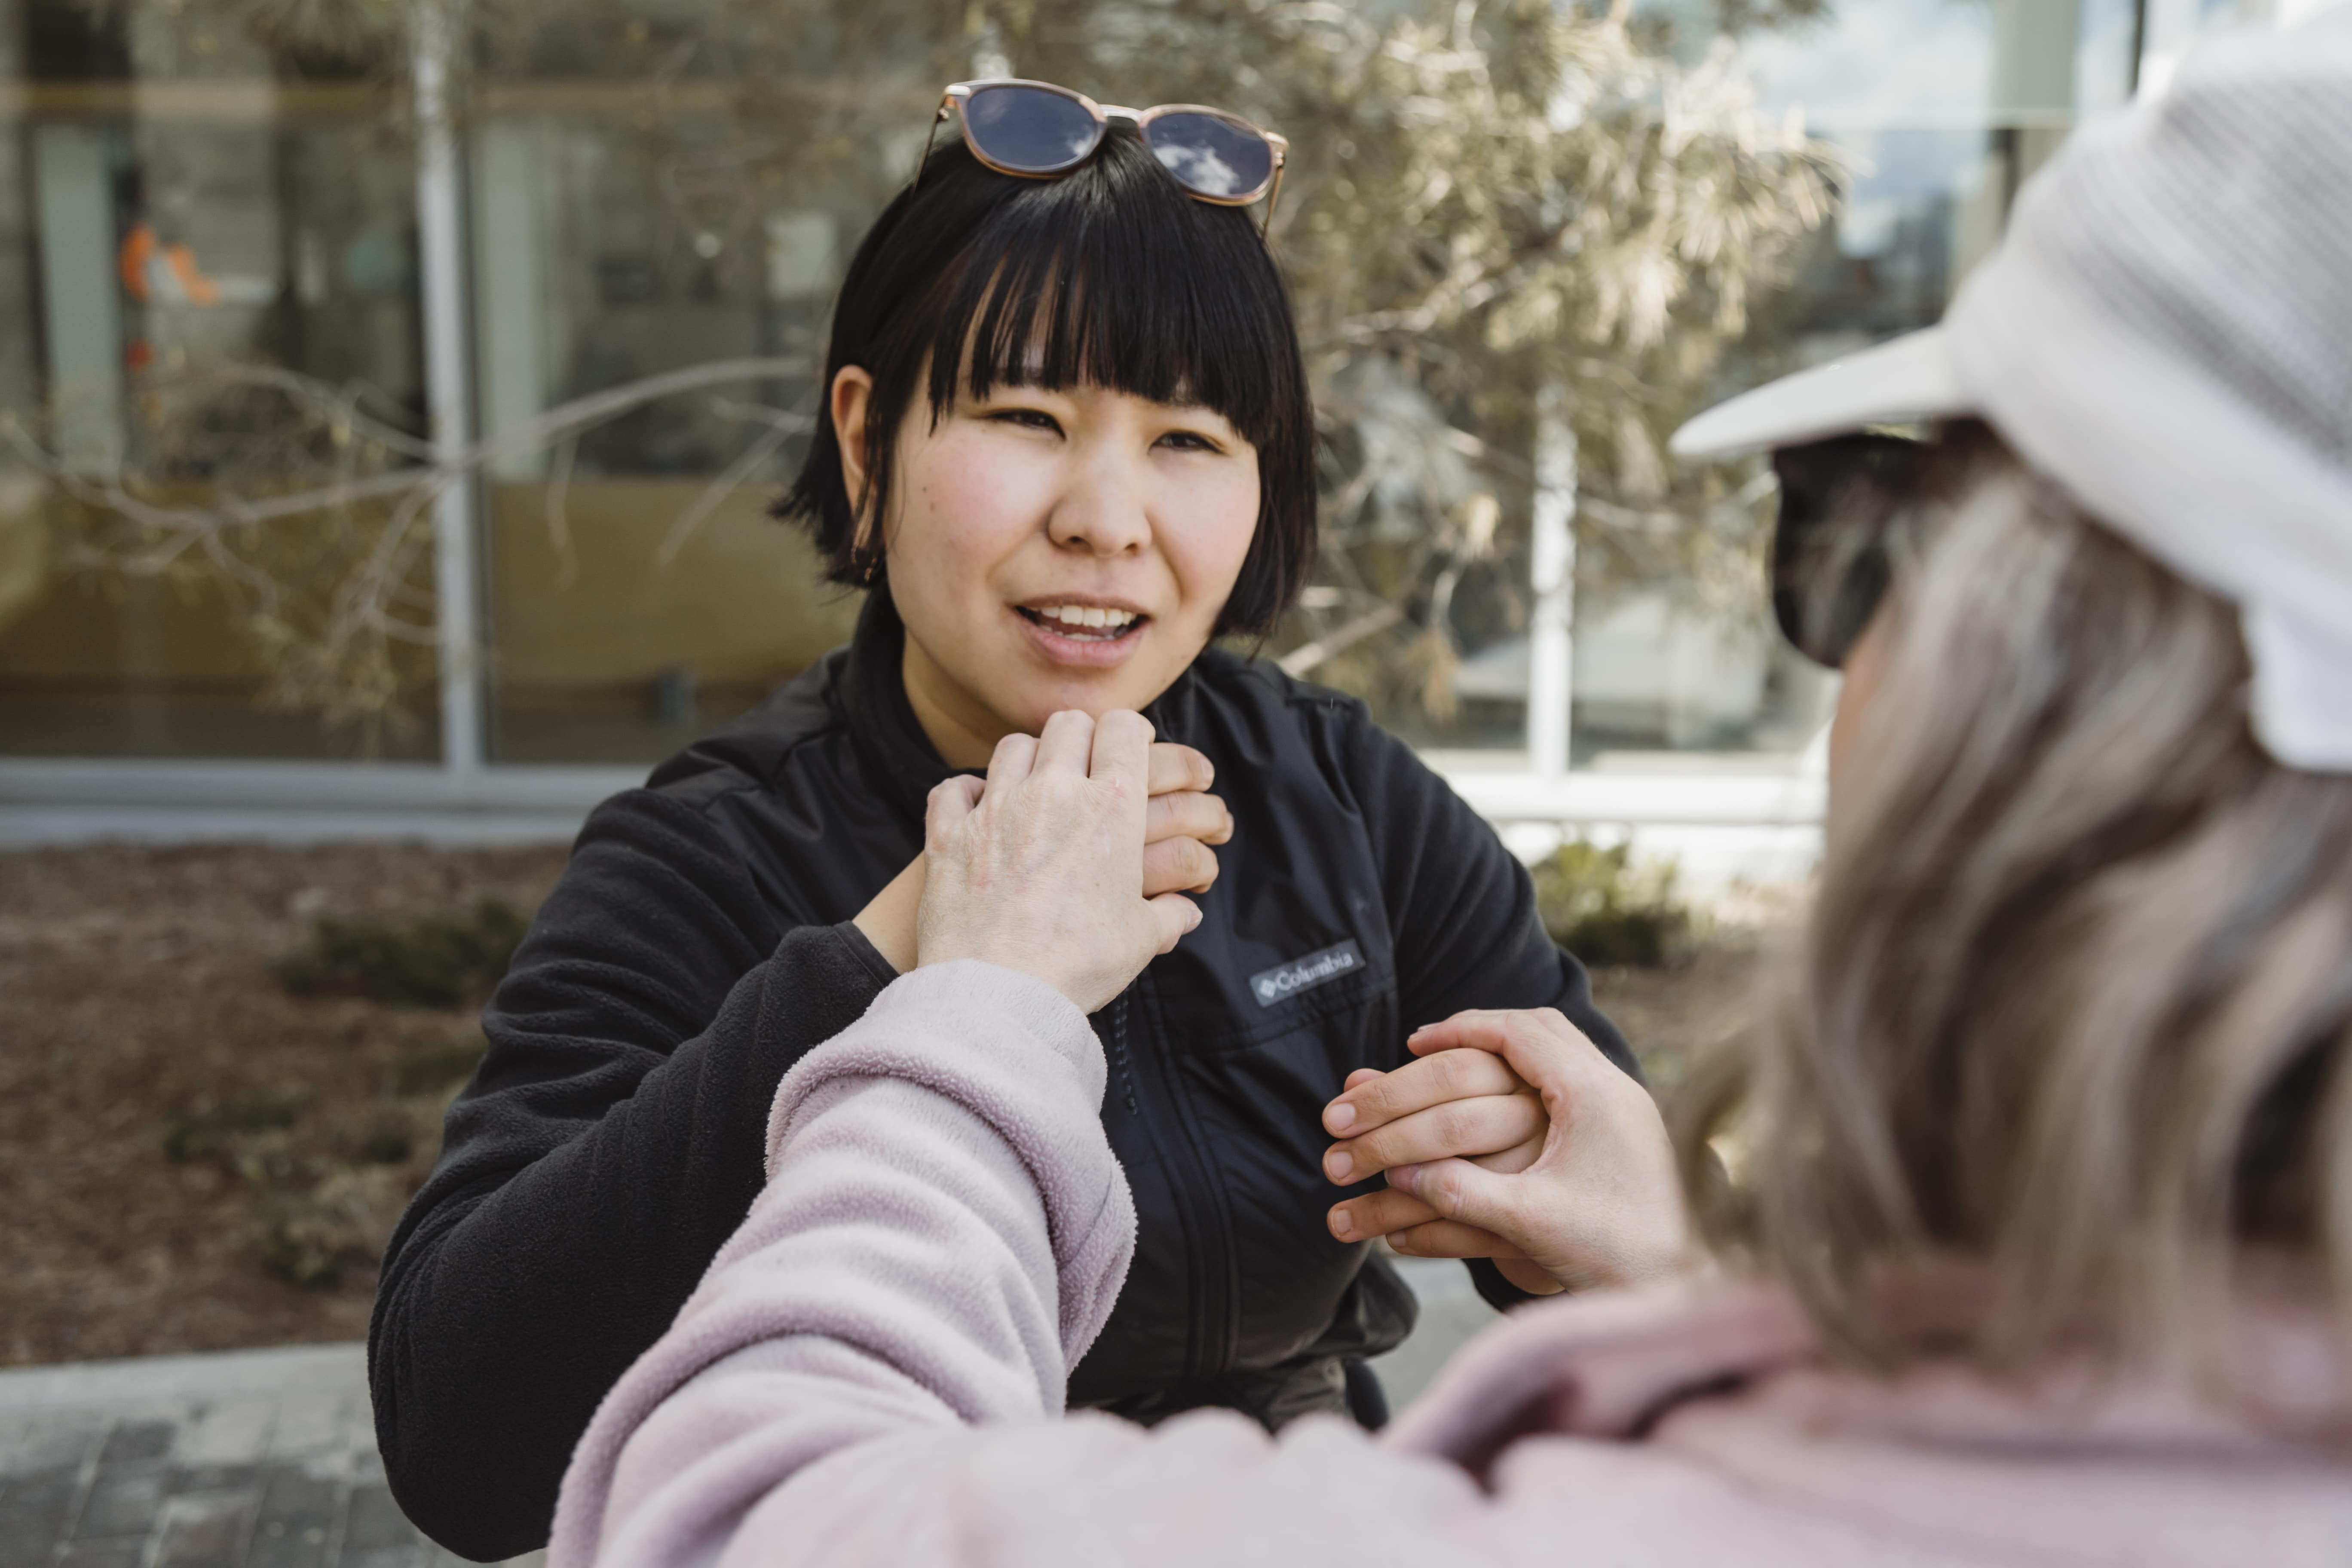 Une accompagnatrice utilise la langue des signes tactile américaine pour converser avec une cliente.